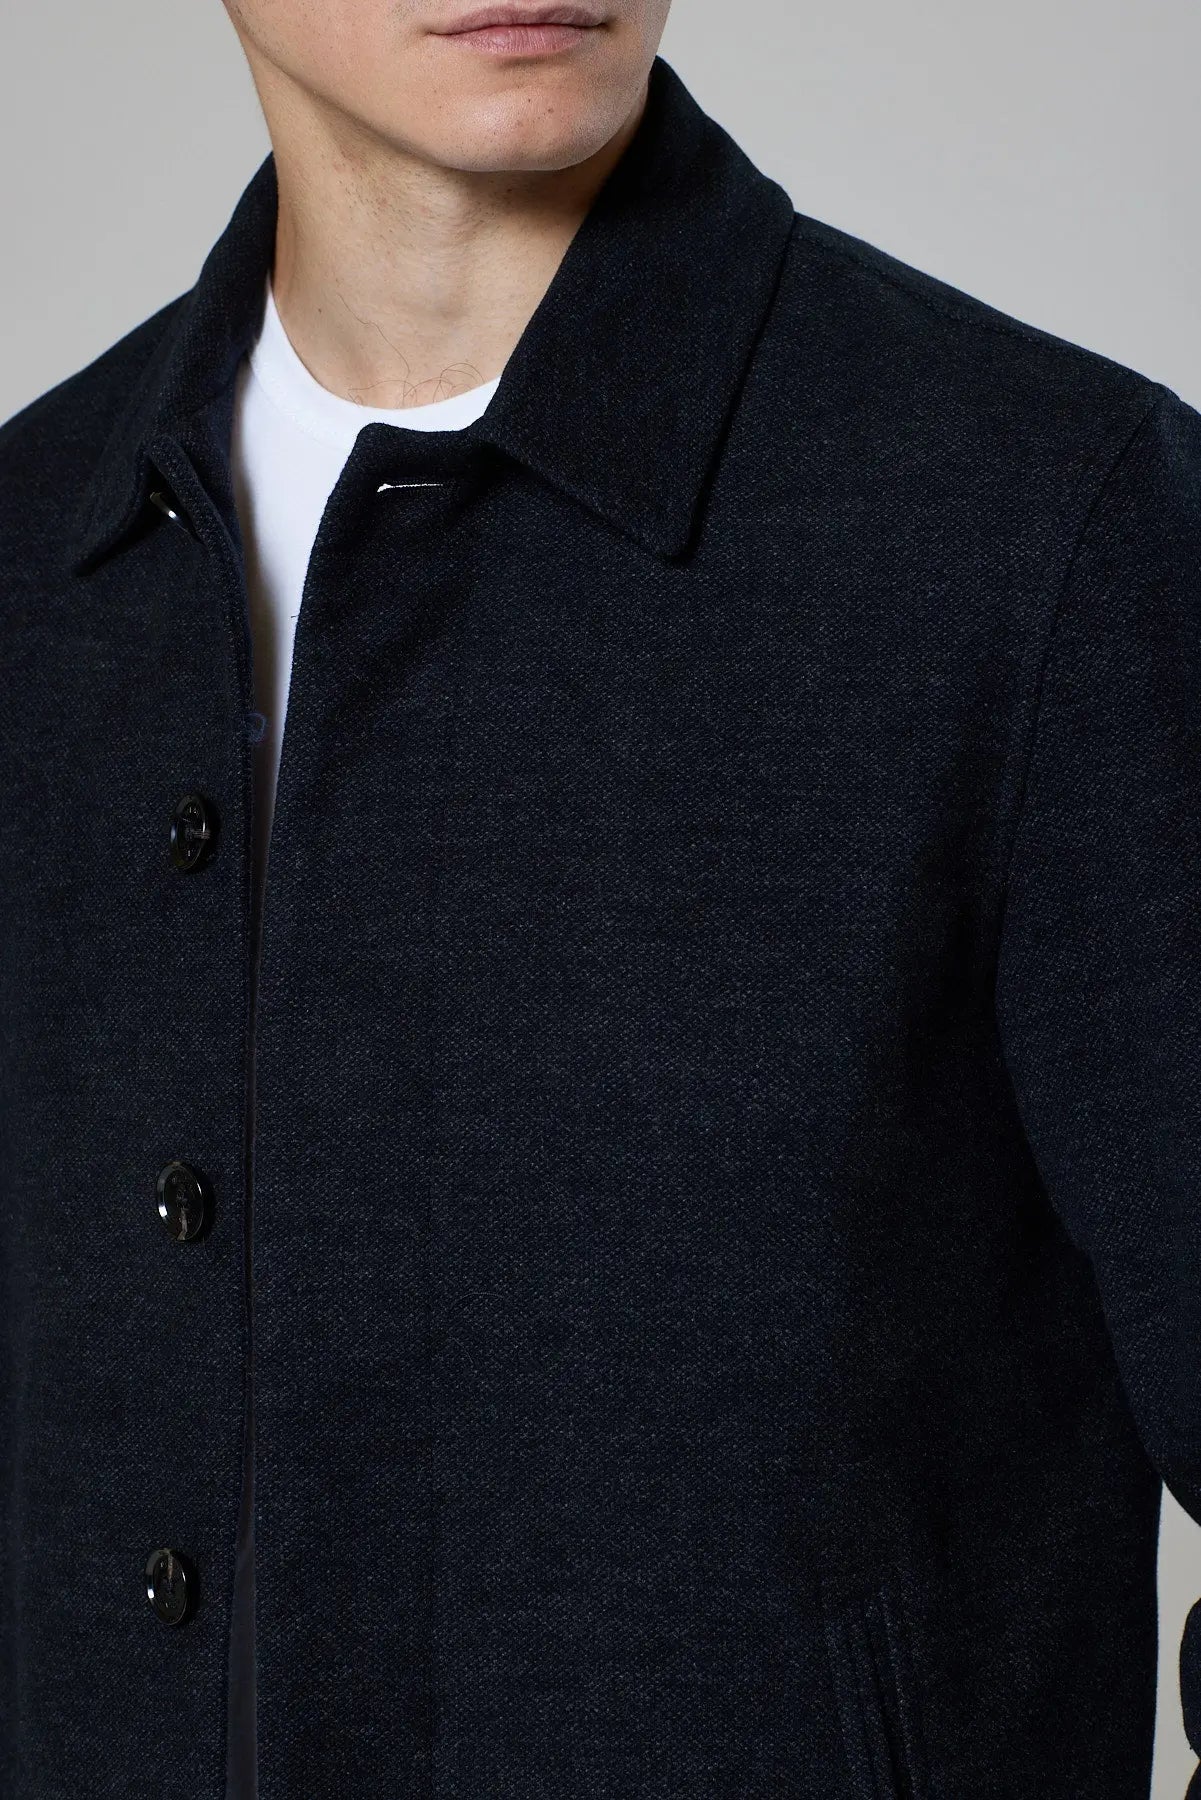 Sherrat Harrington Jacket - Charcoal - Wear London